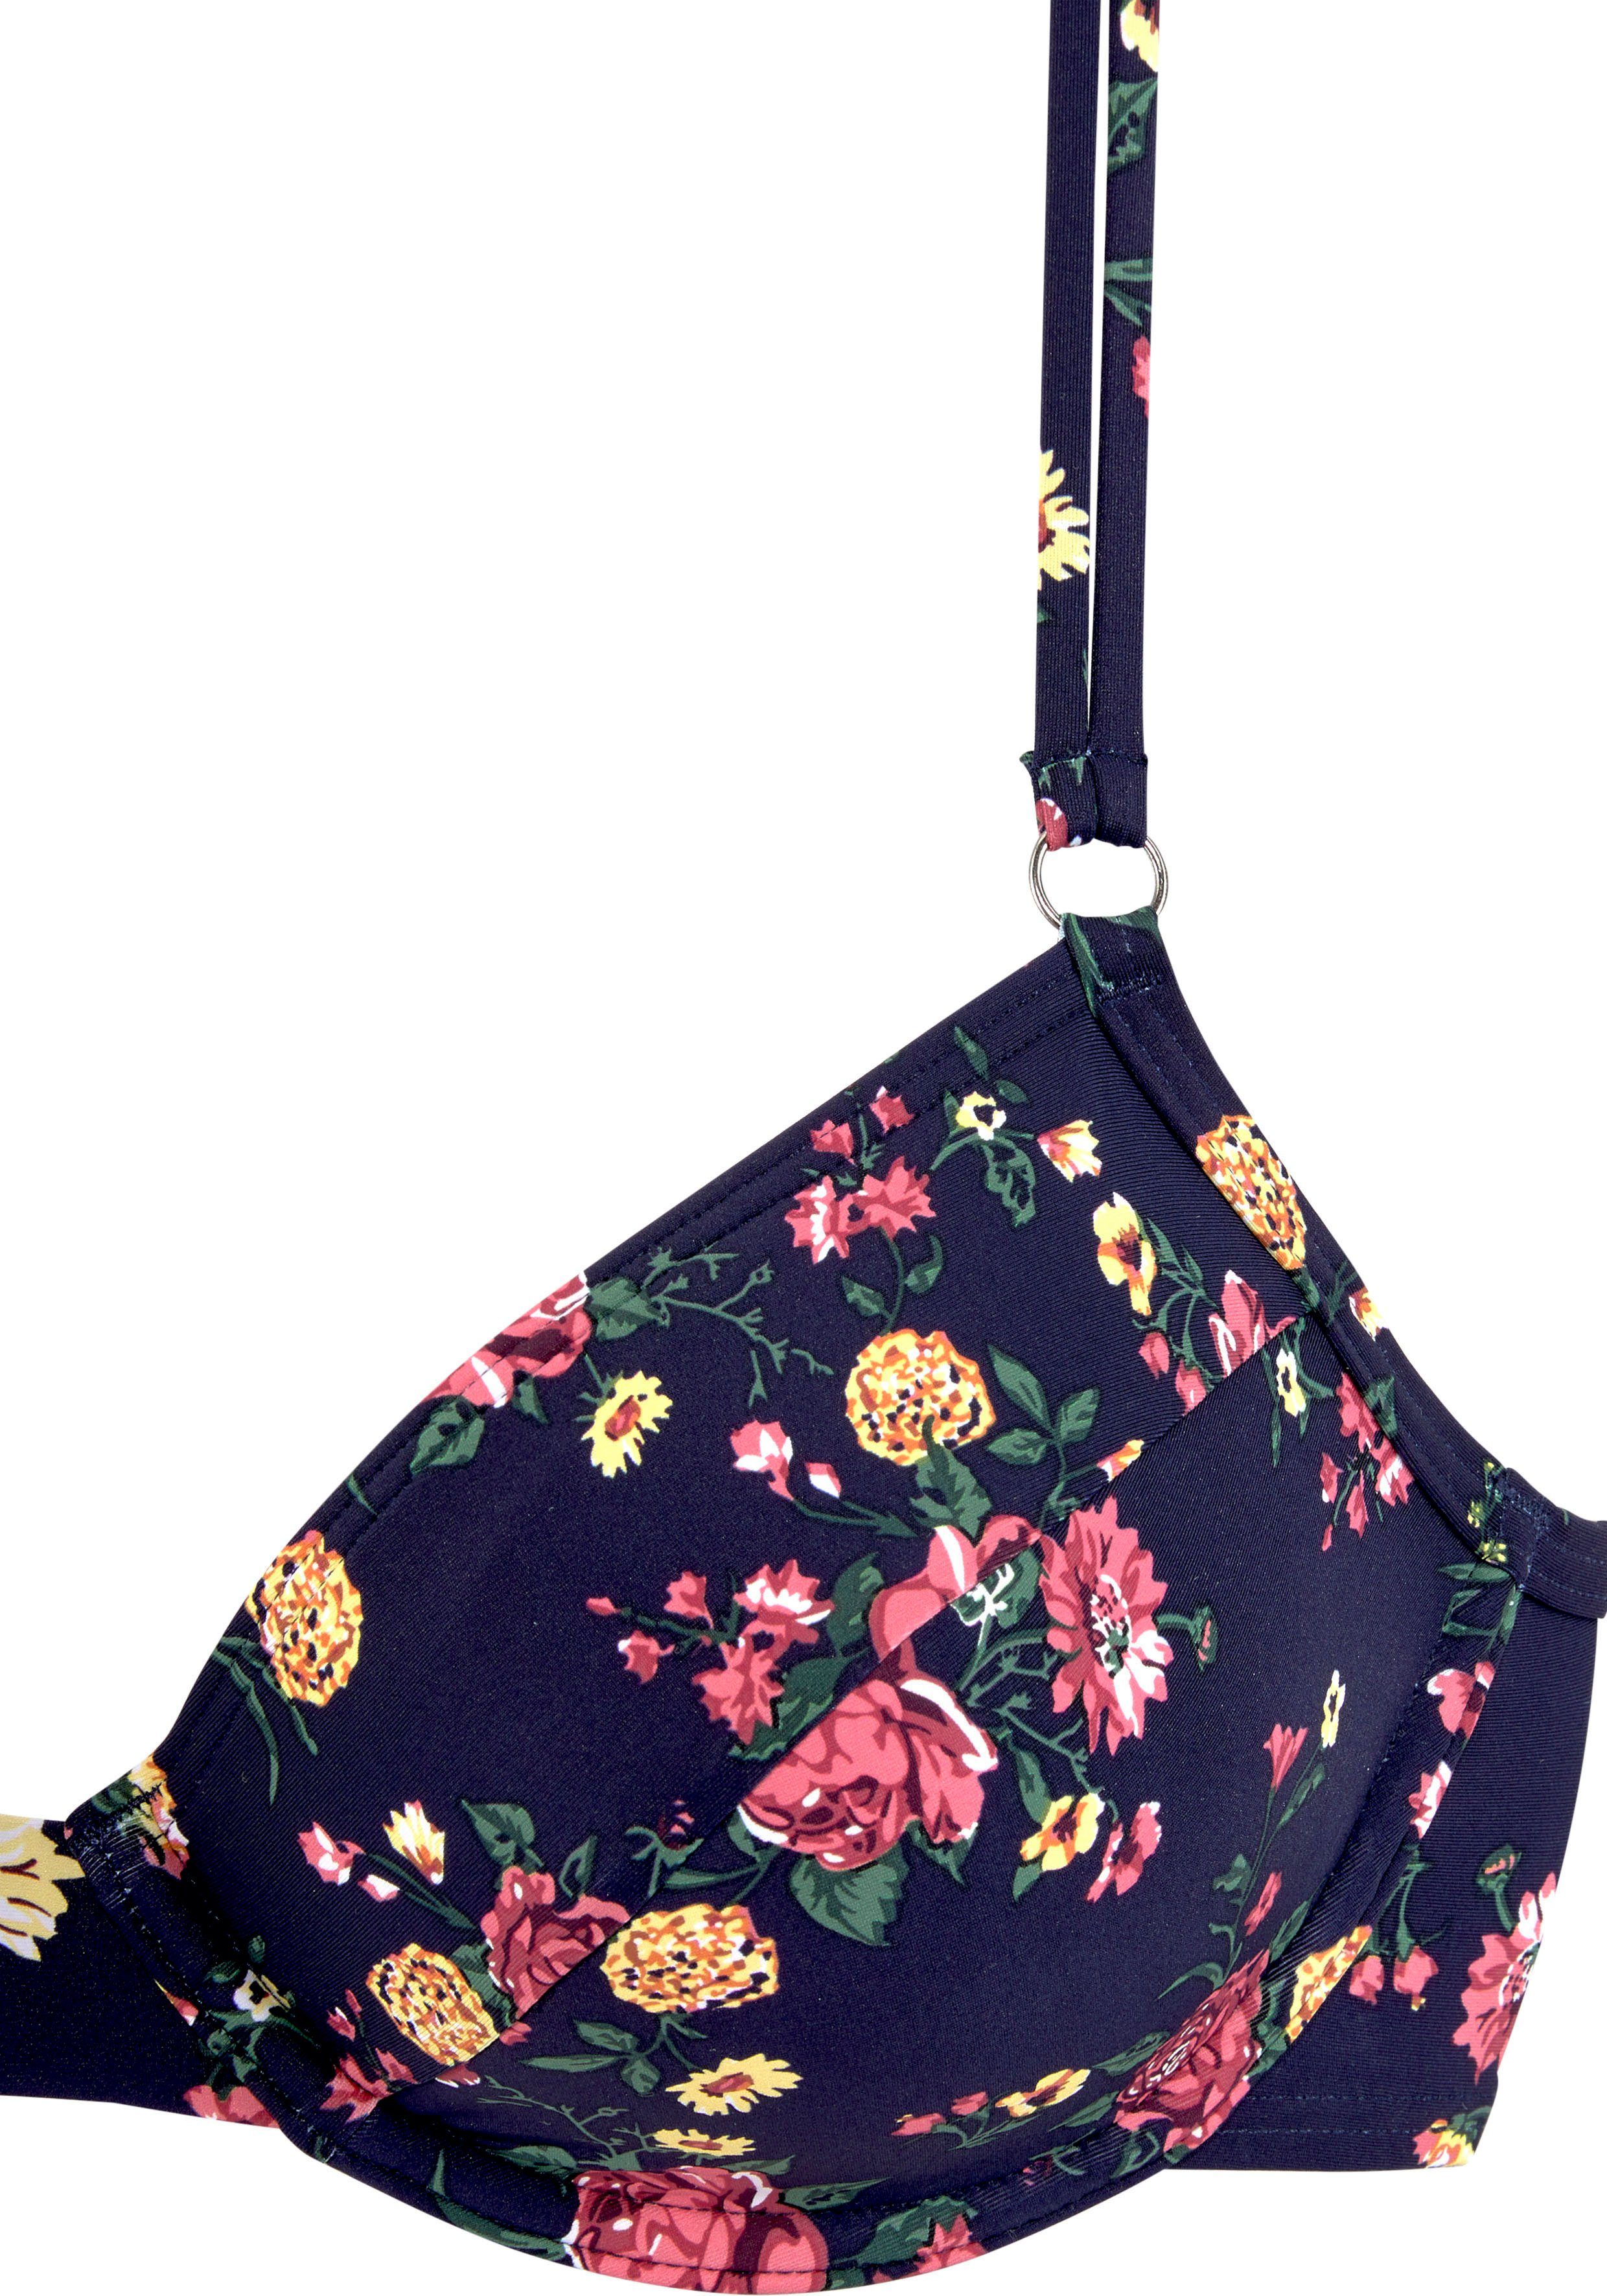 LASCANA Bügel-Bikini mit Blumendesign romantischem